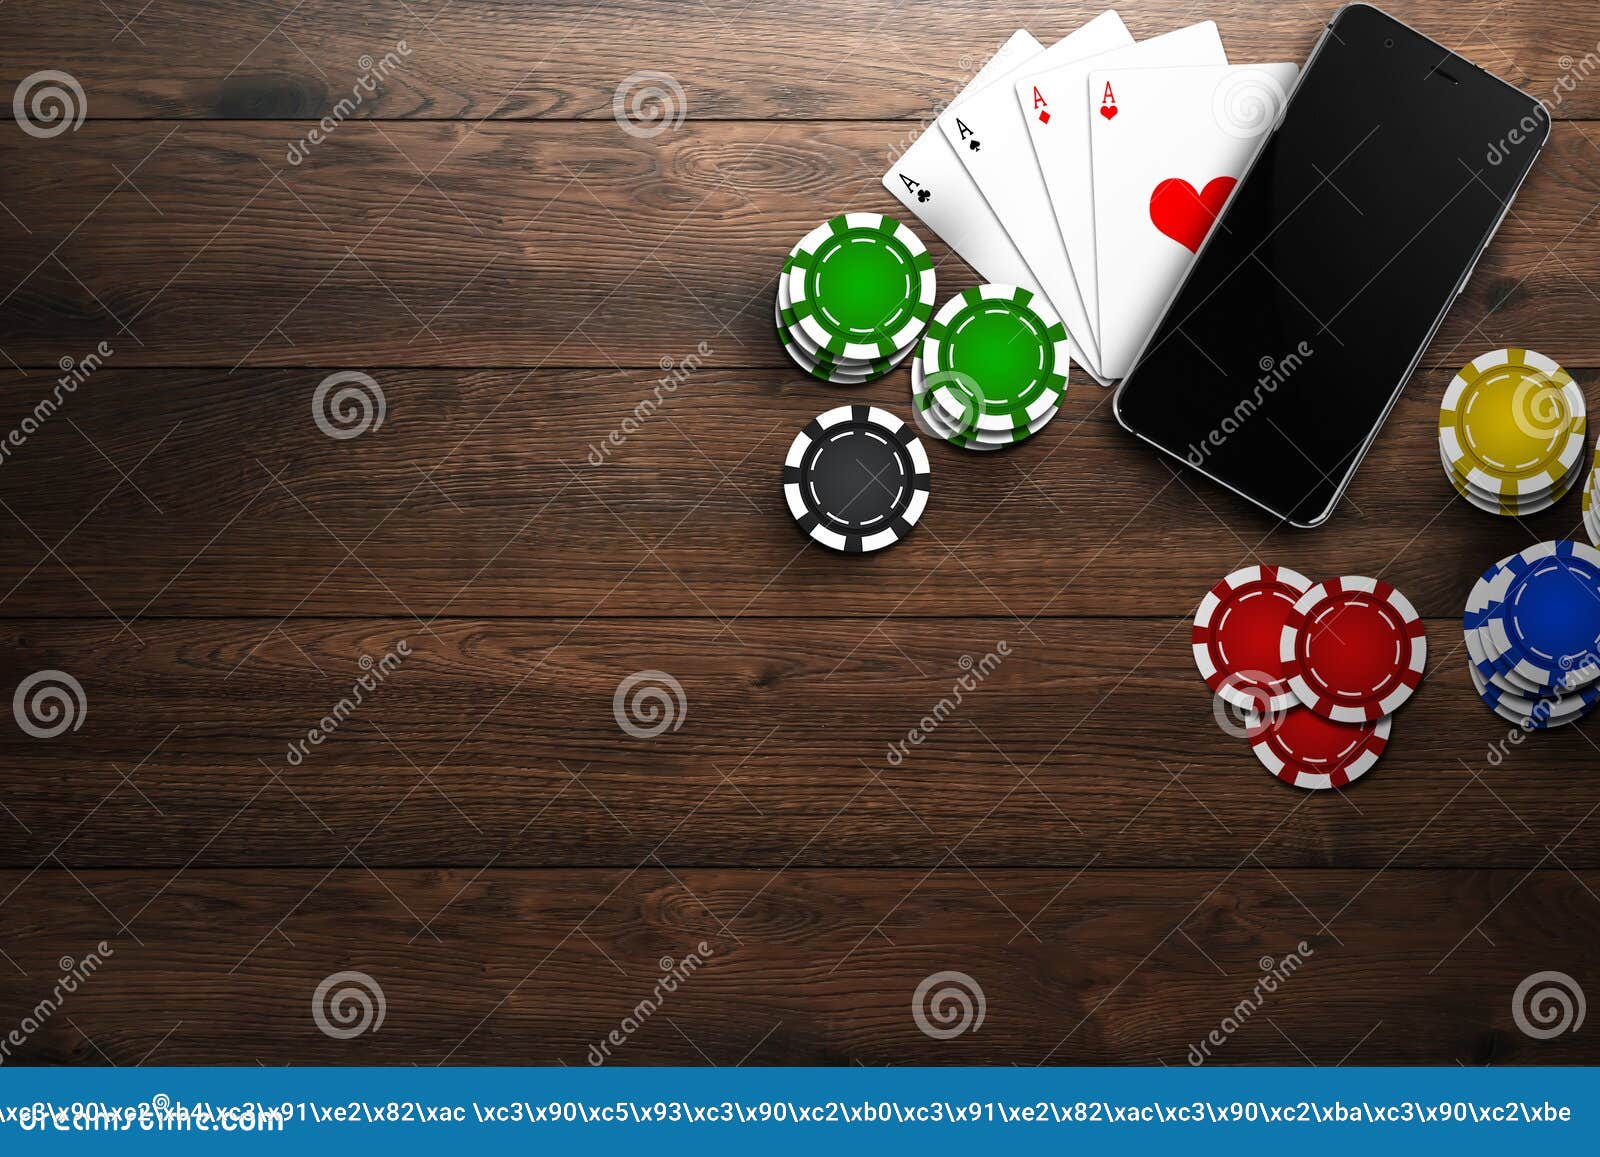 Мобильные интернет казино казино вики и вэнс